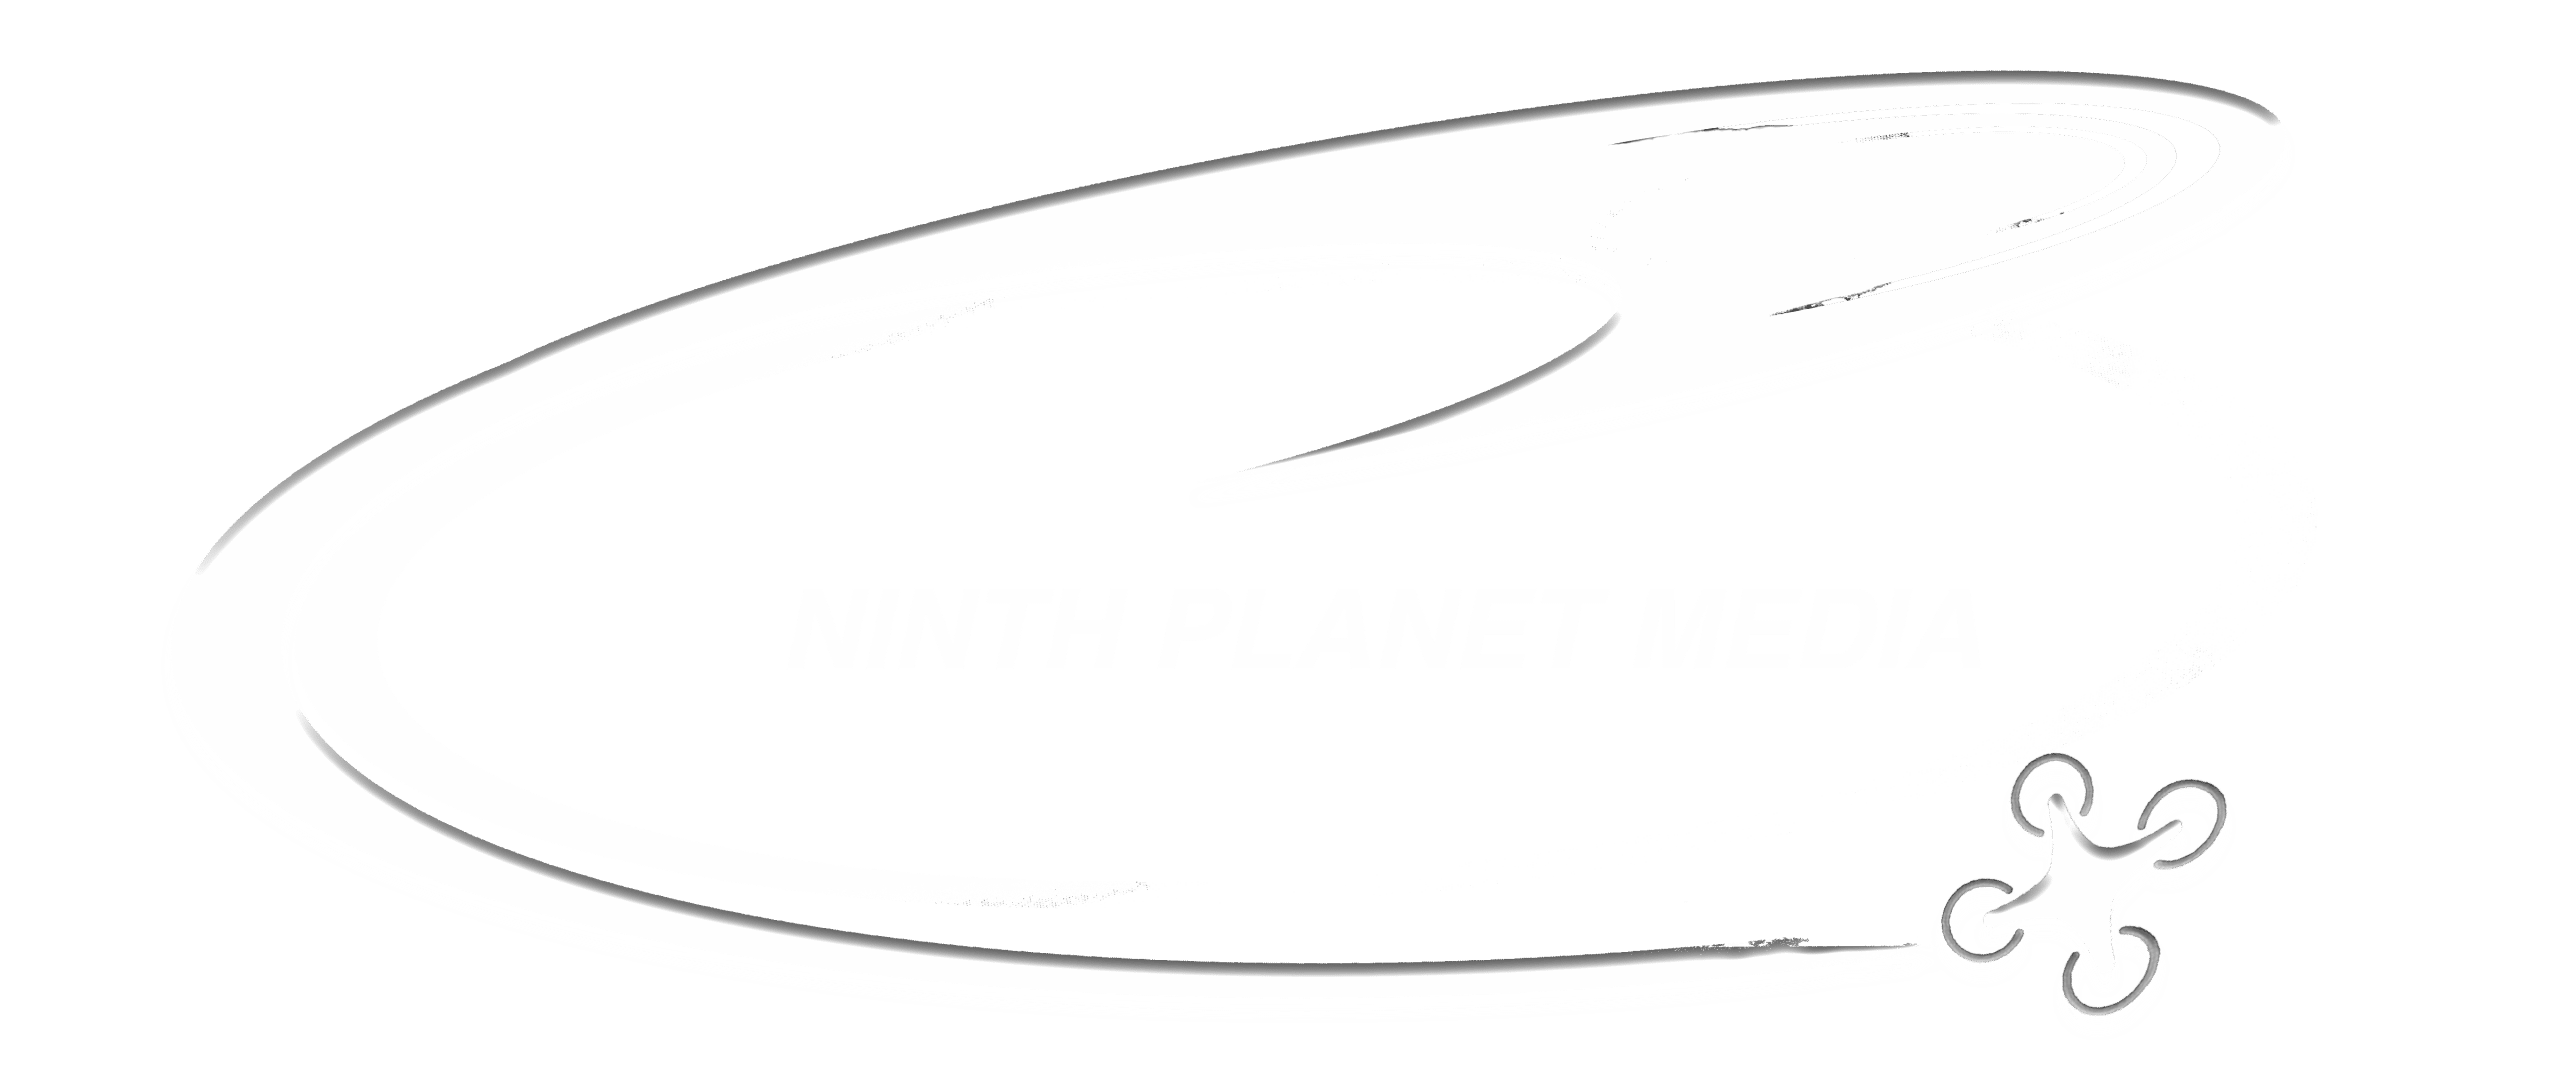 Ninth Planet Logo White